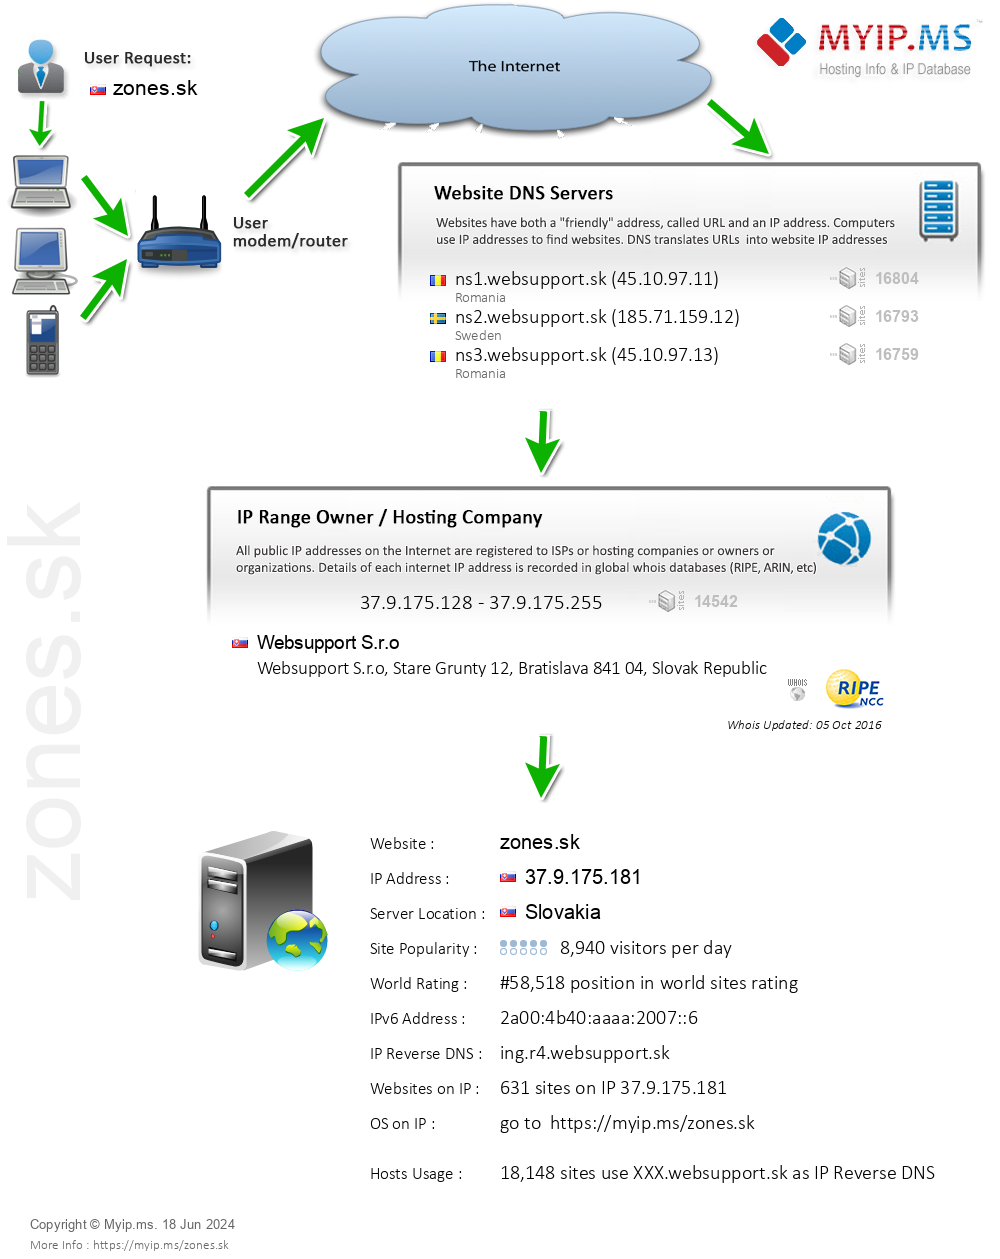 Zones.sk - Website Hosting Visual IP Diagram